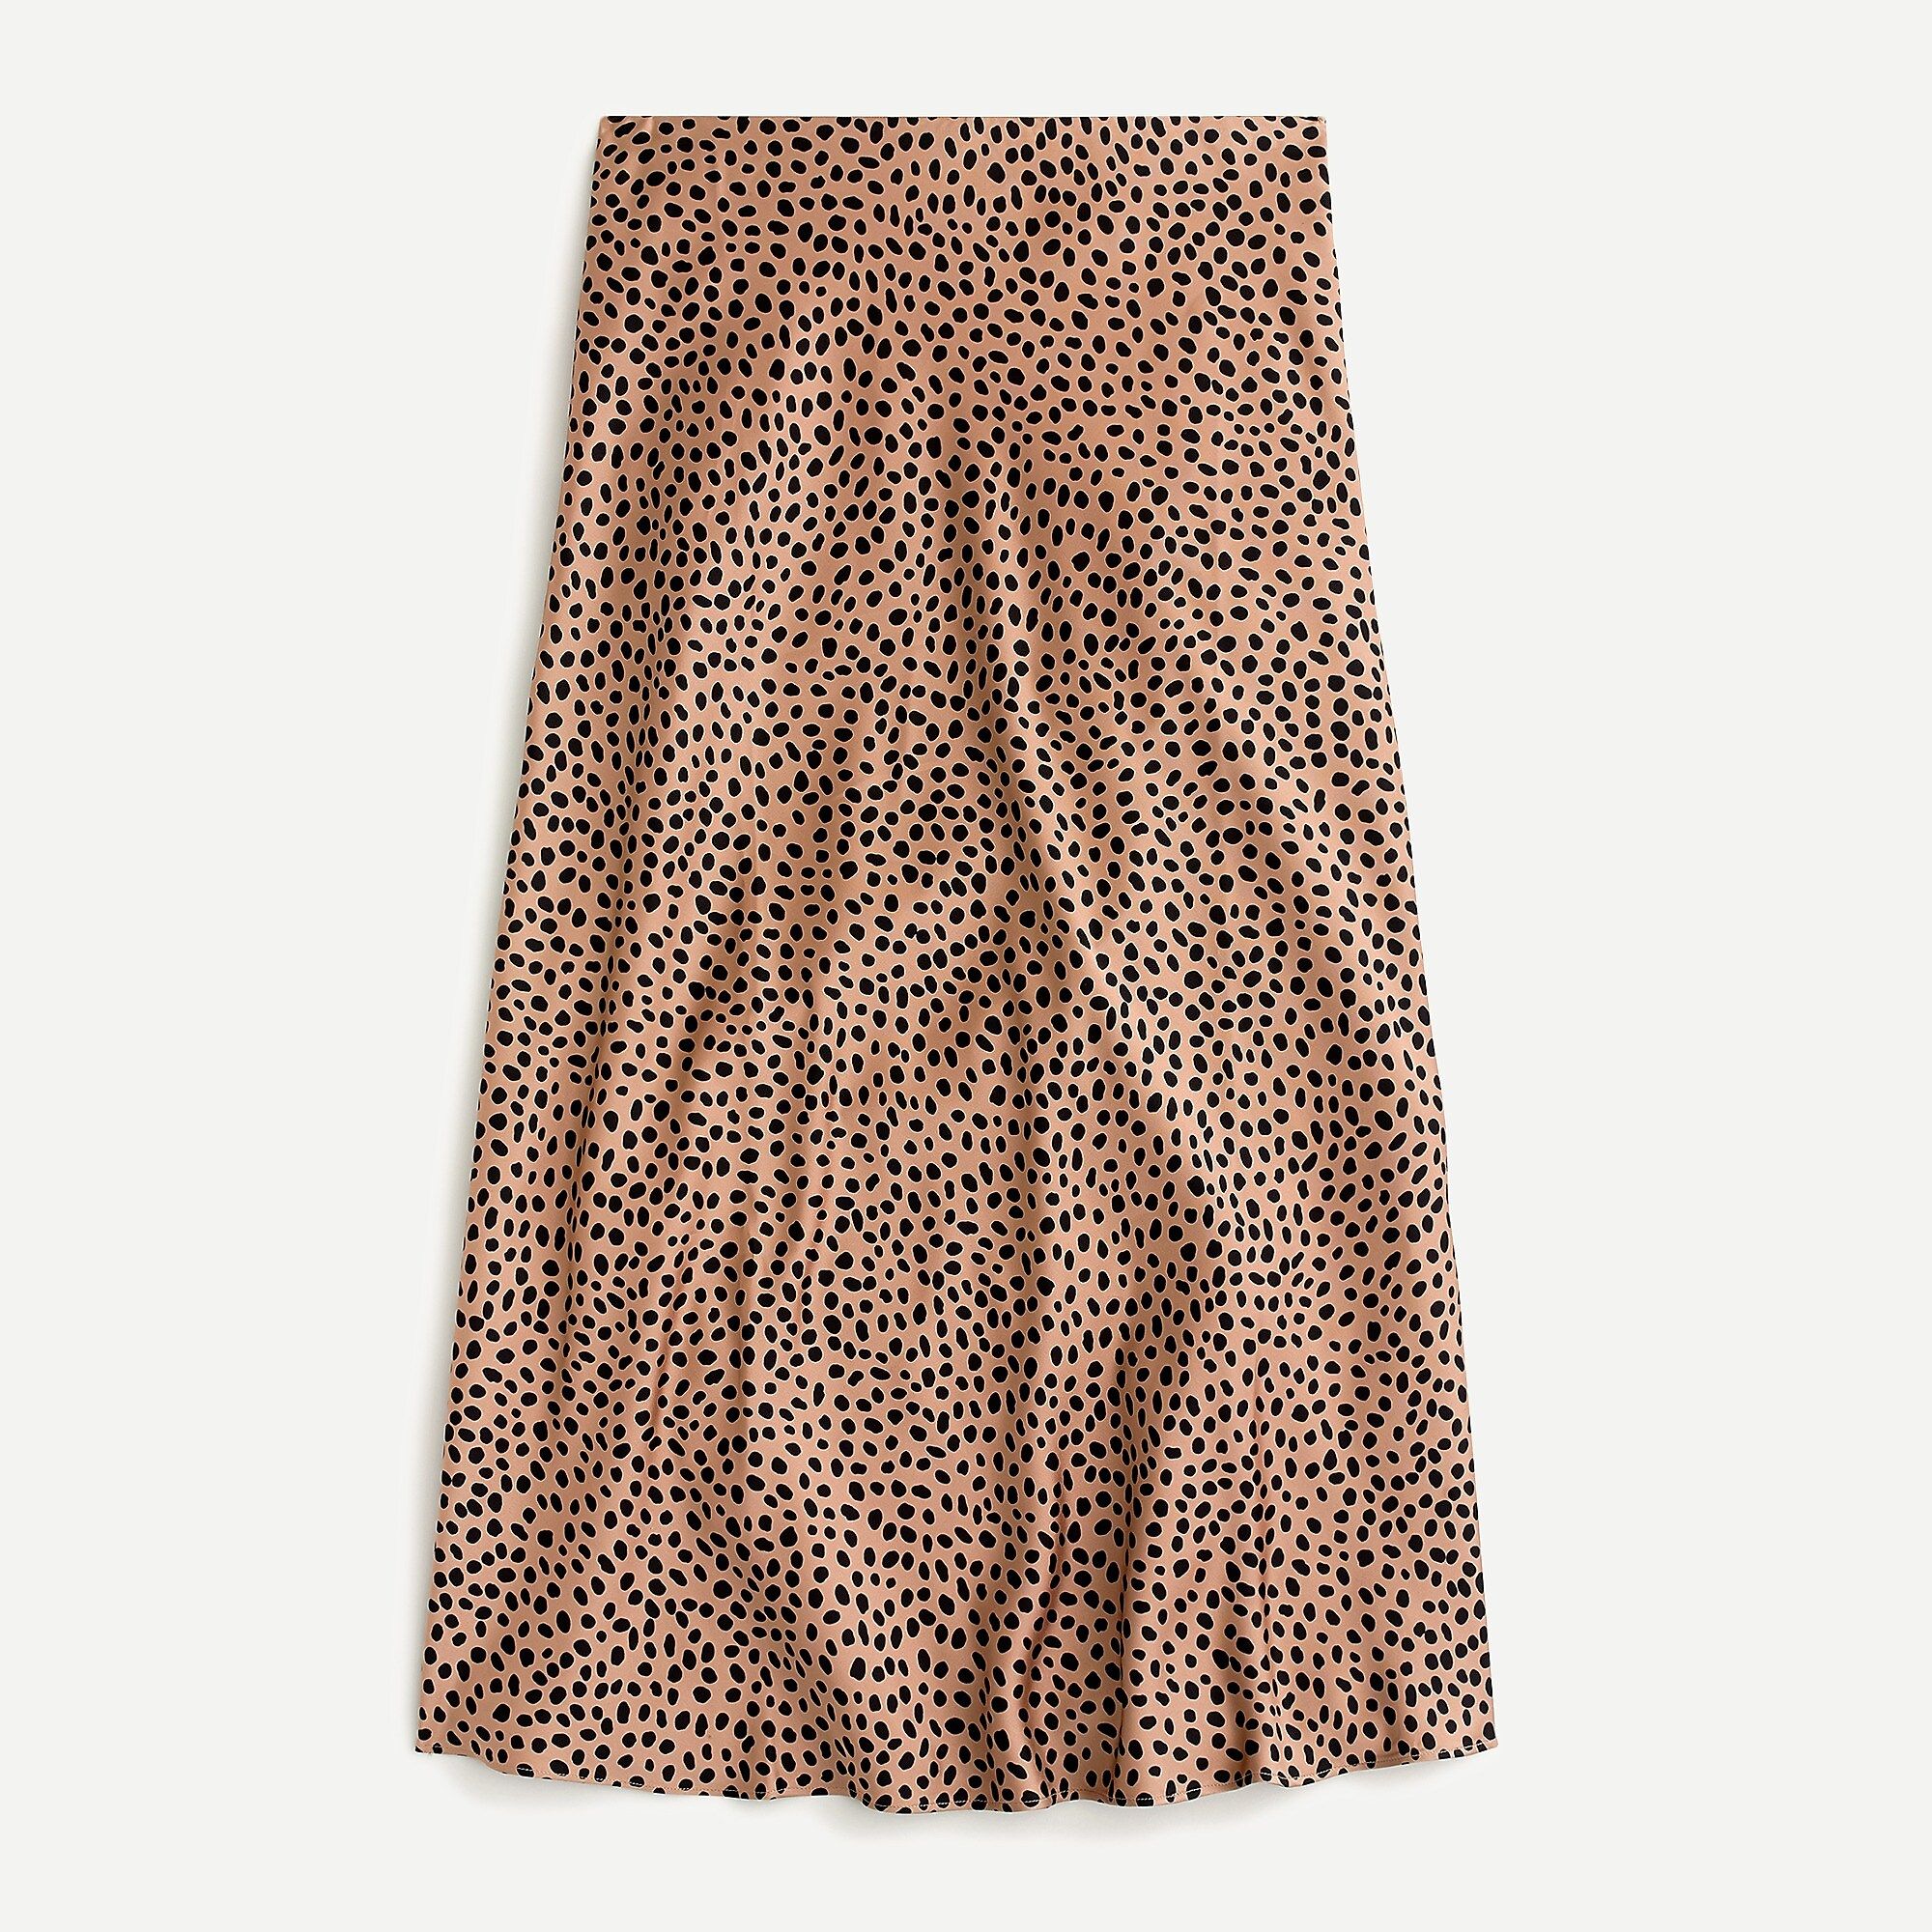 Pull-on slip skirt in leopard dot | J.Crew US